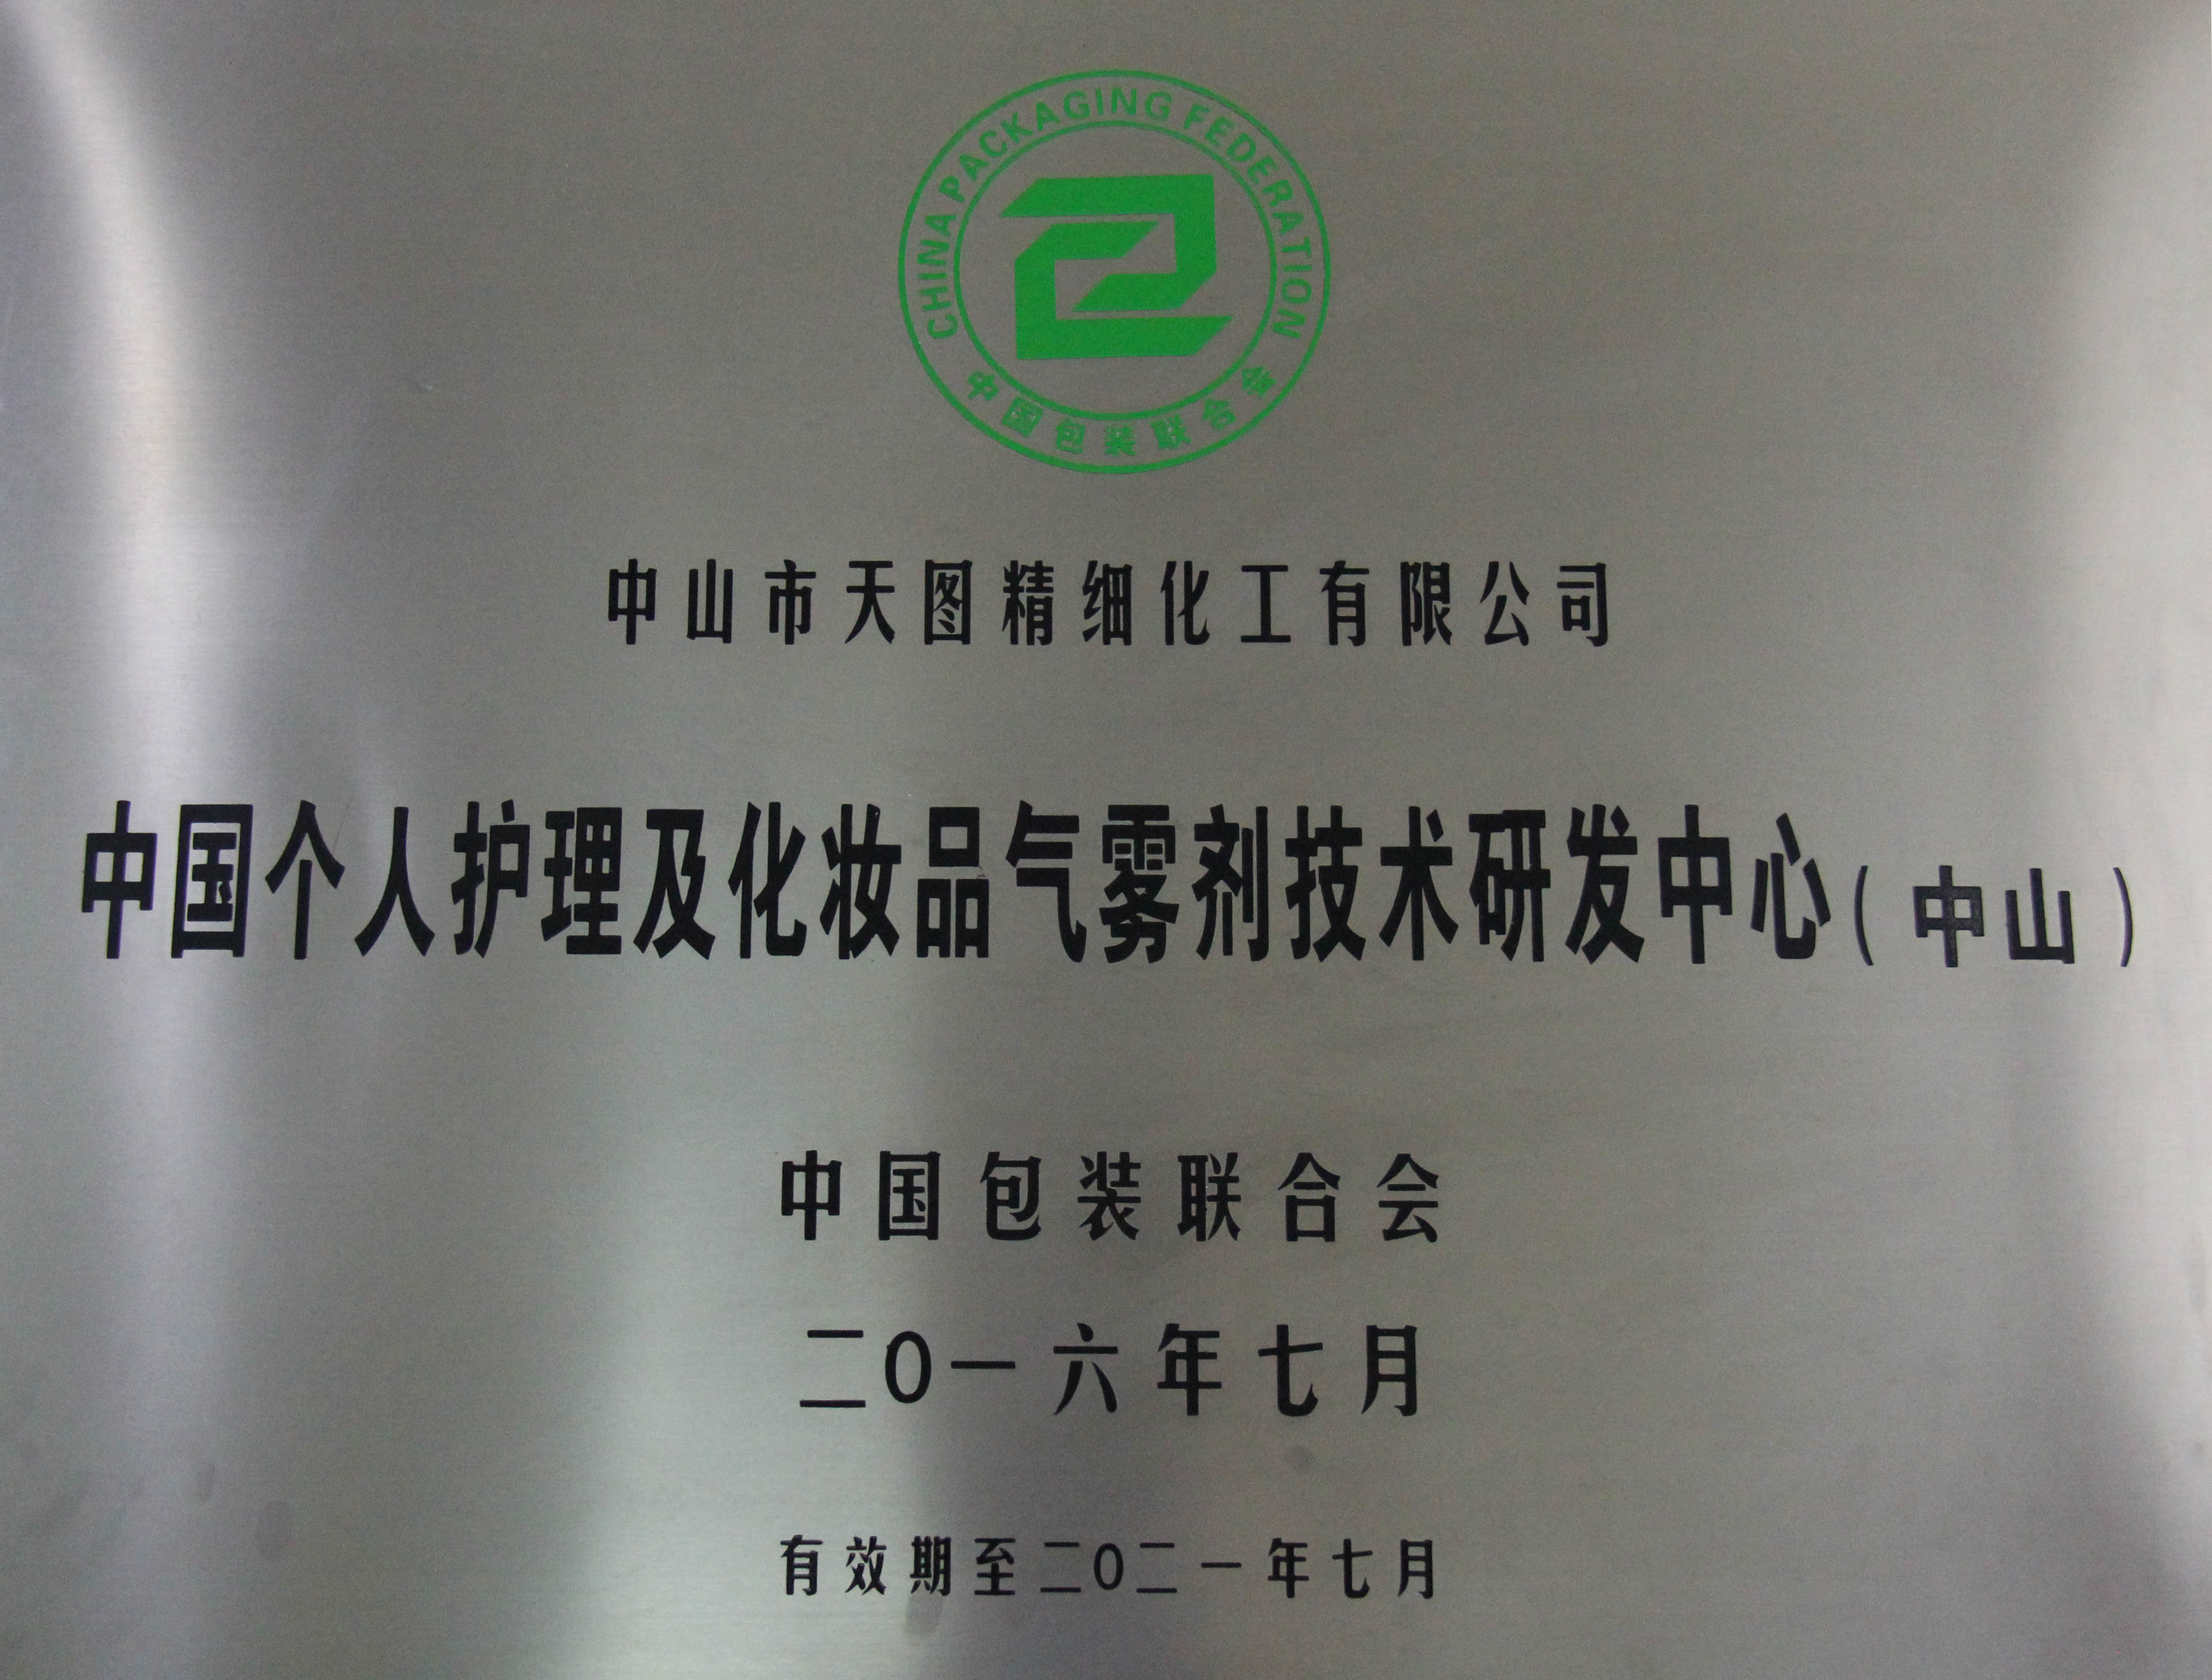 中国护理及化妆品气雾剂研发技术中心牌匾